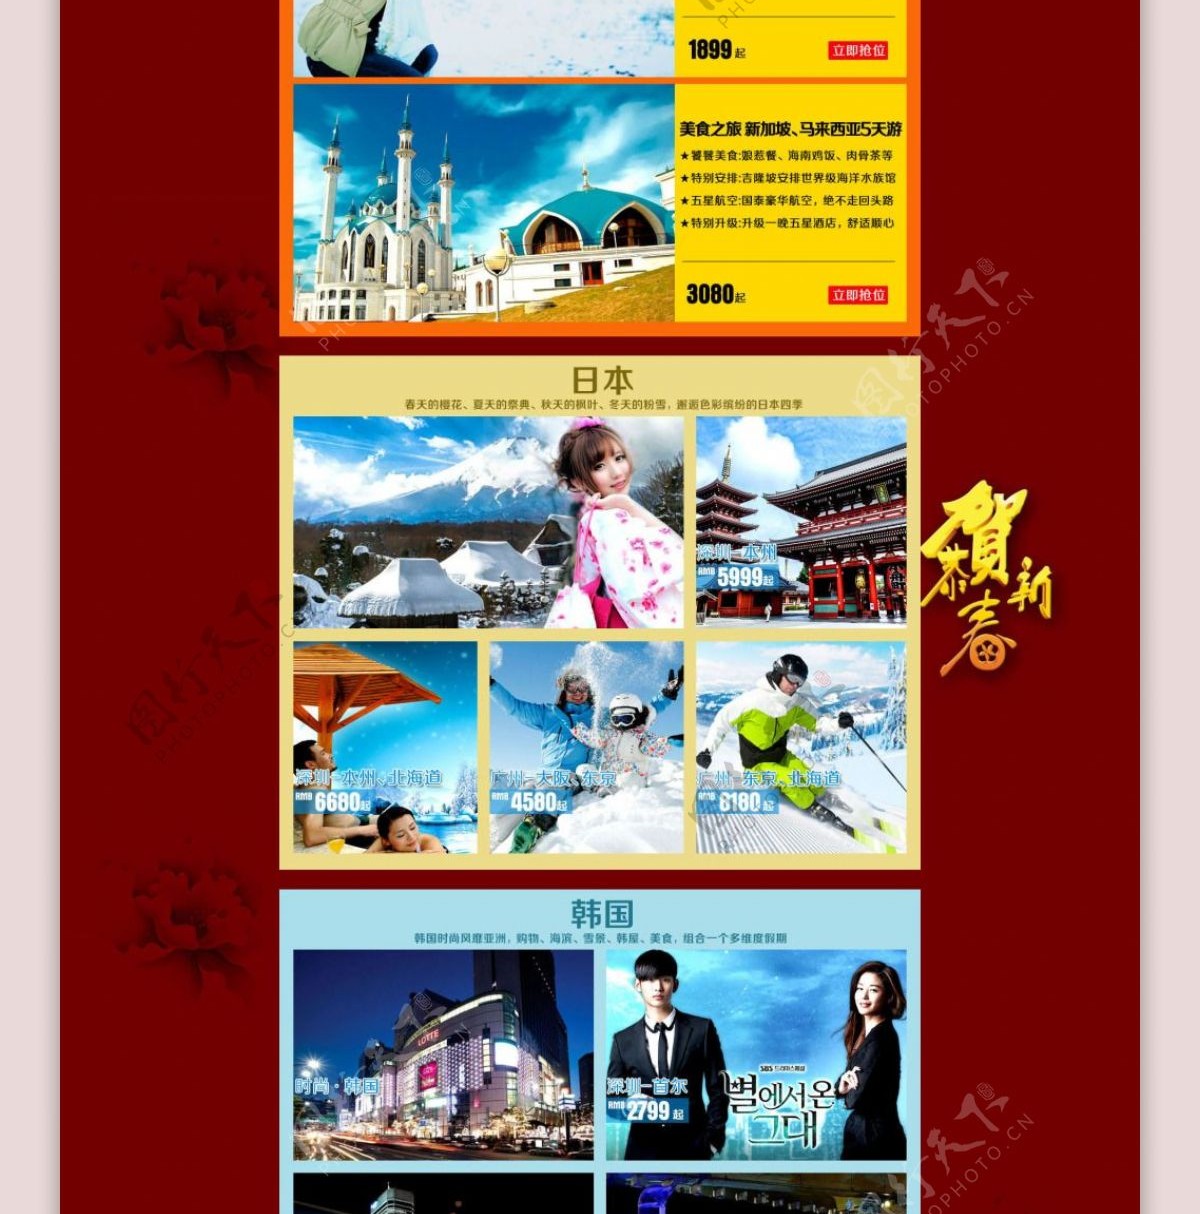 旅游产品春节宣传图广告图淘宝首页幽梦轩